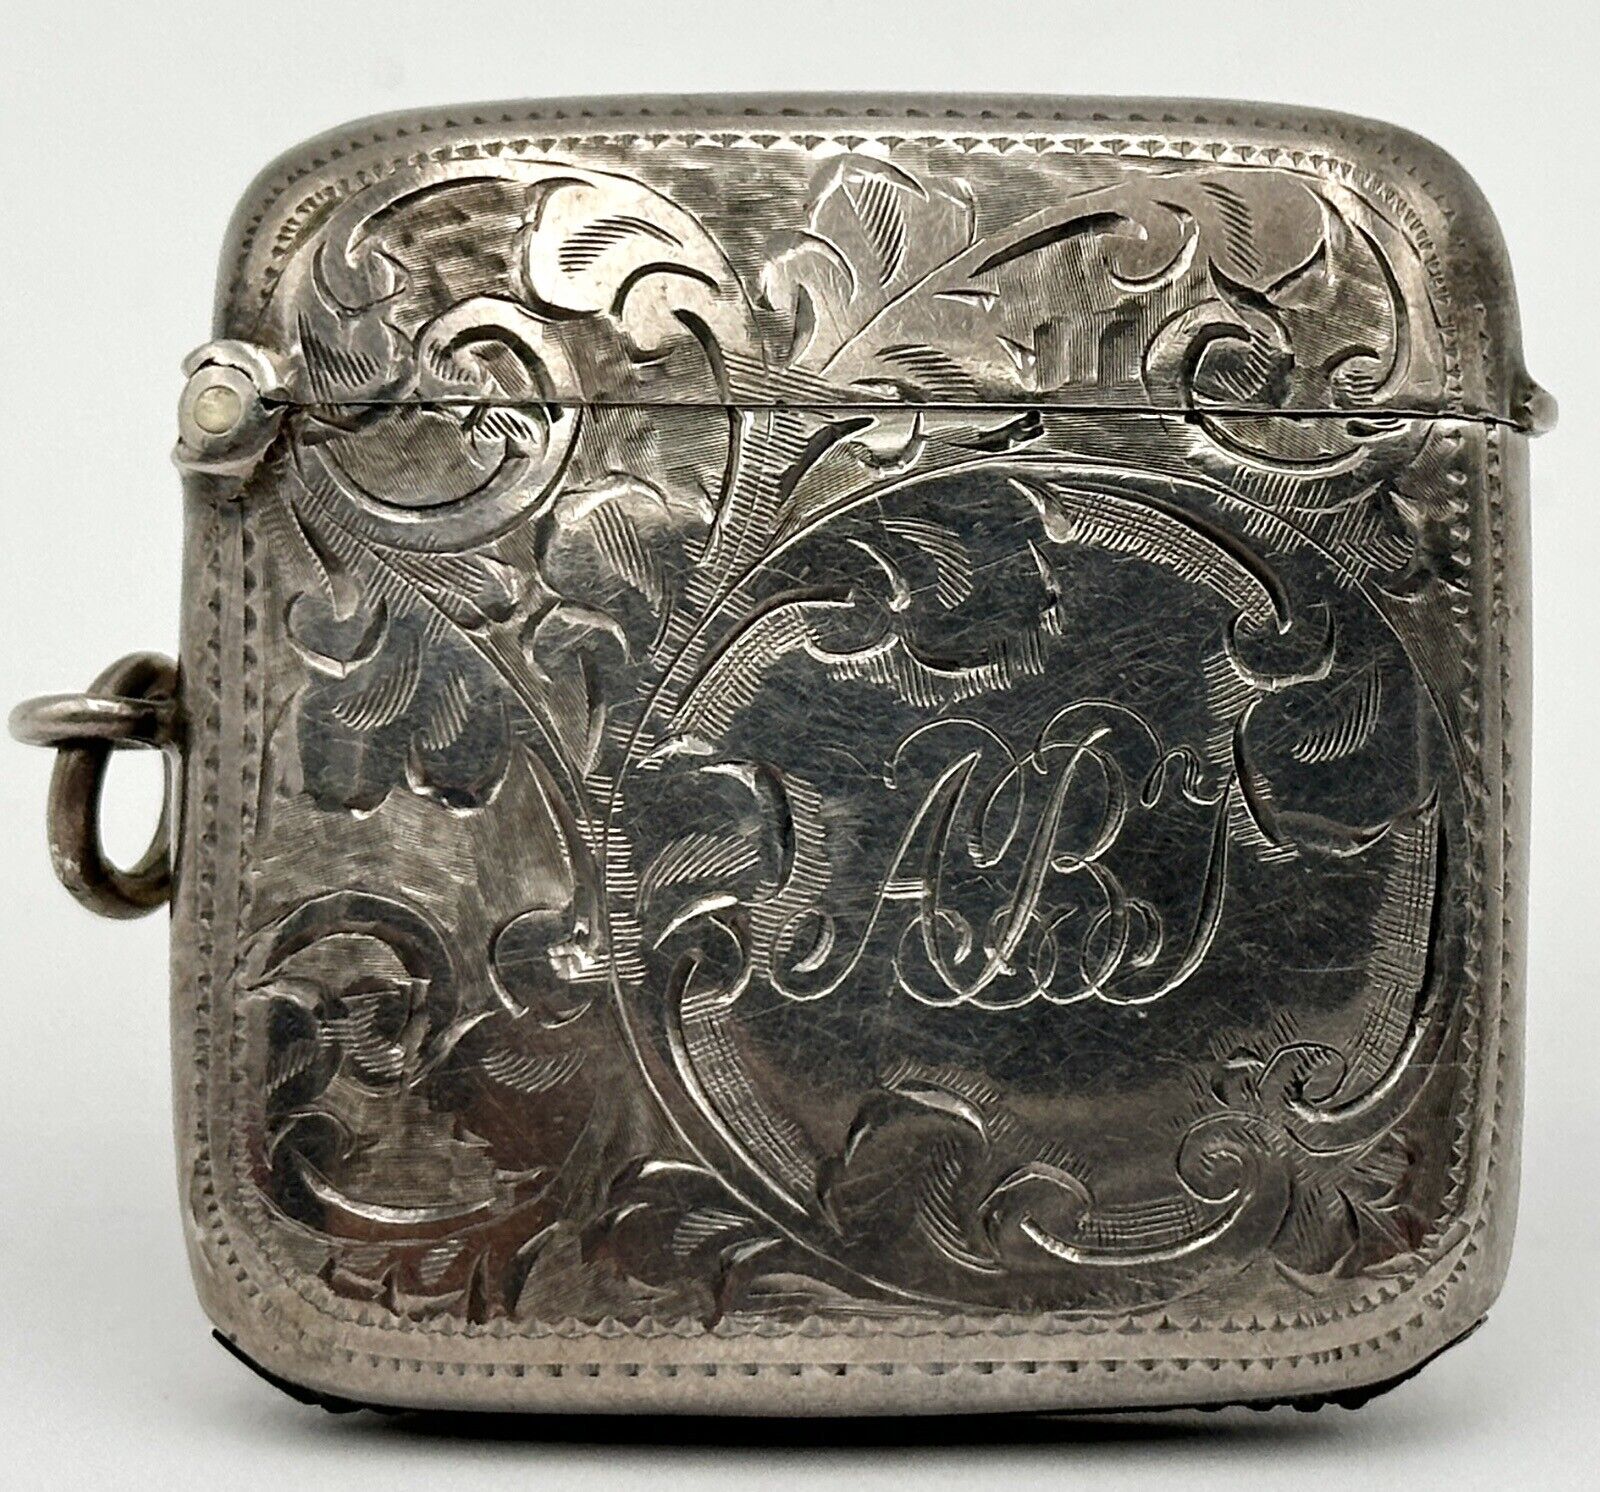 Antique Match Safe Vesta Case Sterling Silver Wiliam H Haseler Monogrammed 1908